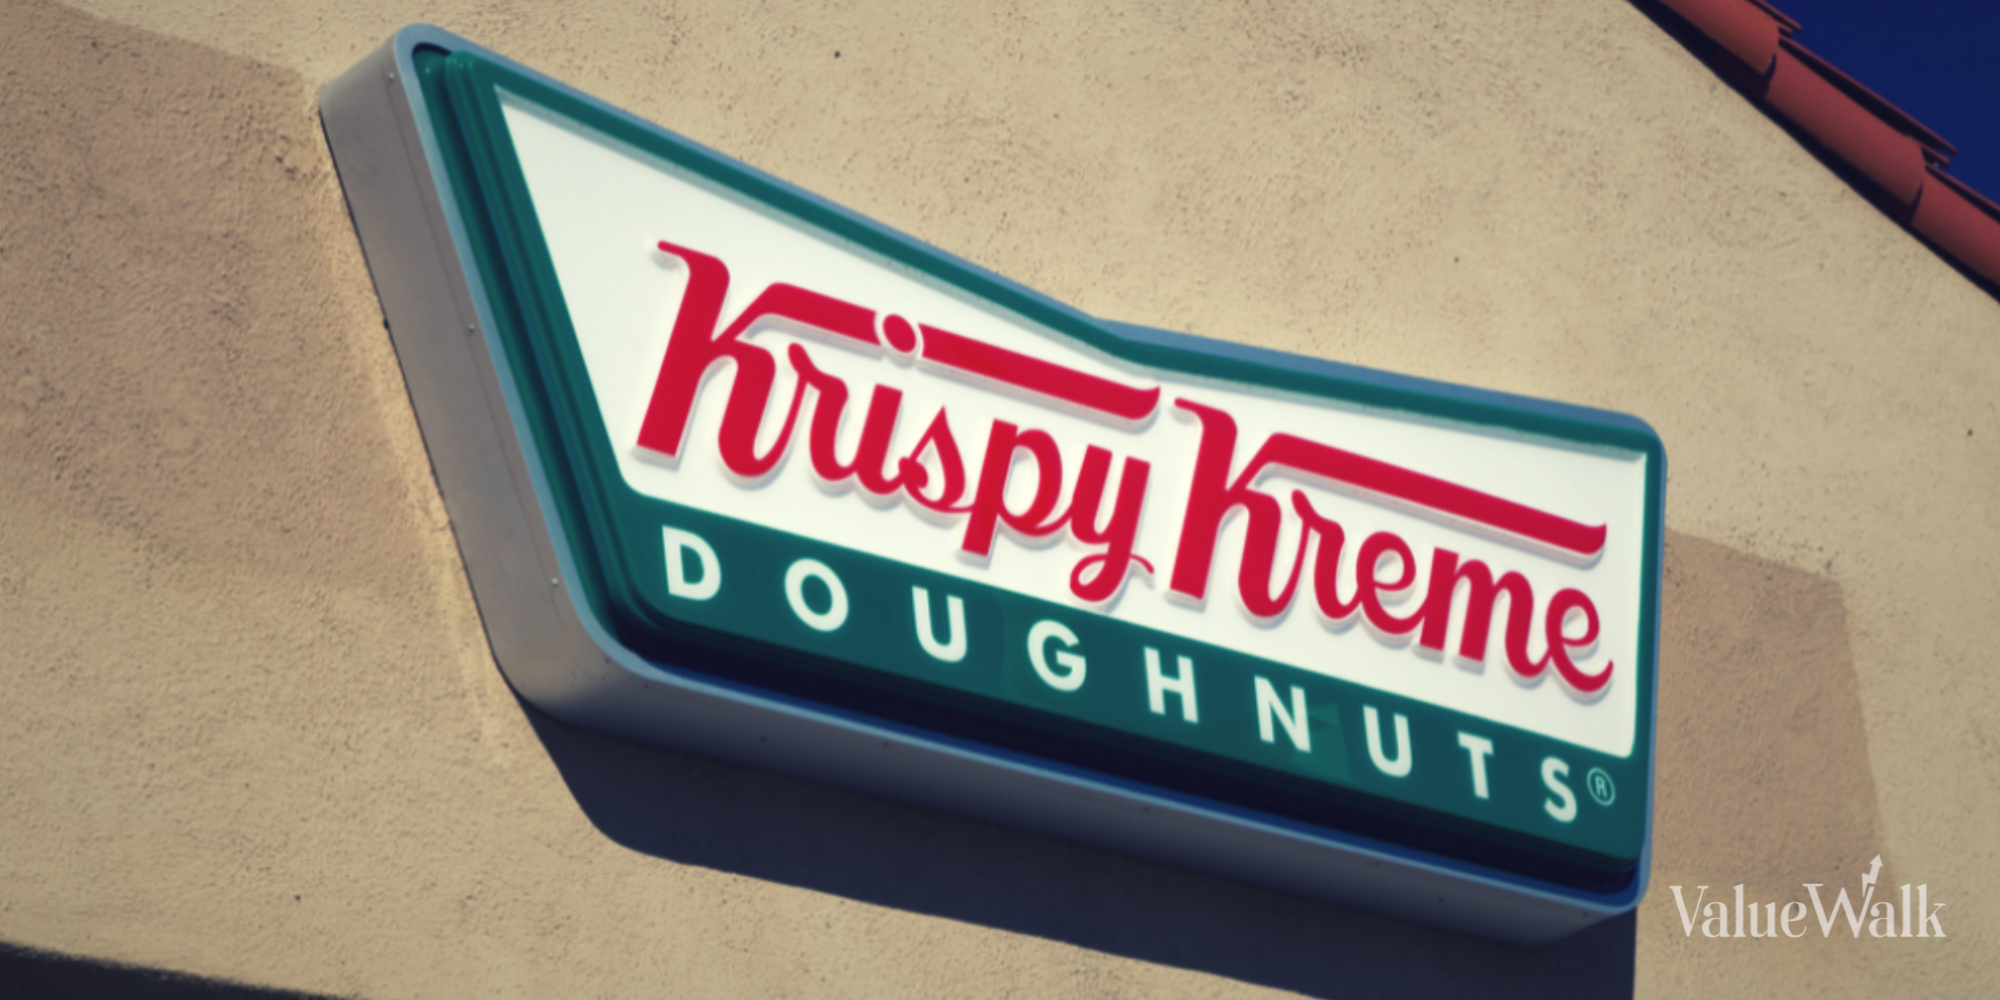 New Partnership Could be Sweet for Krispy Kreme